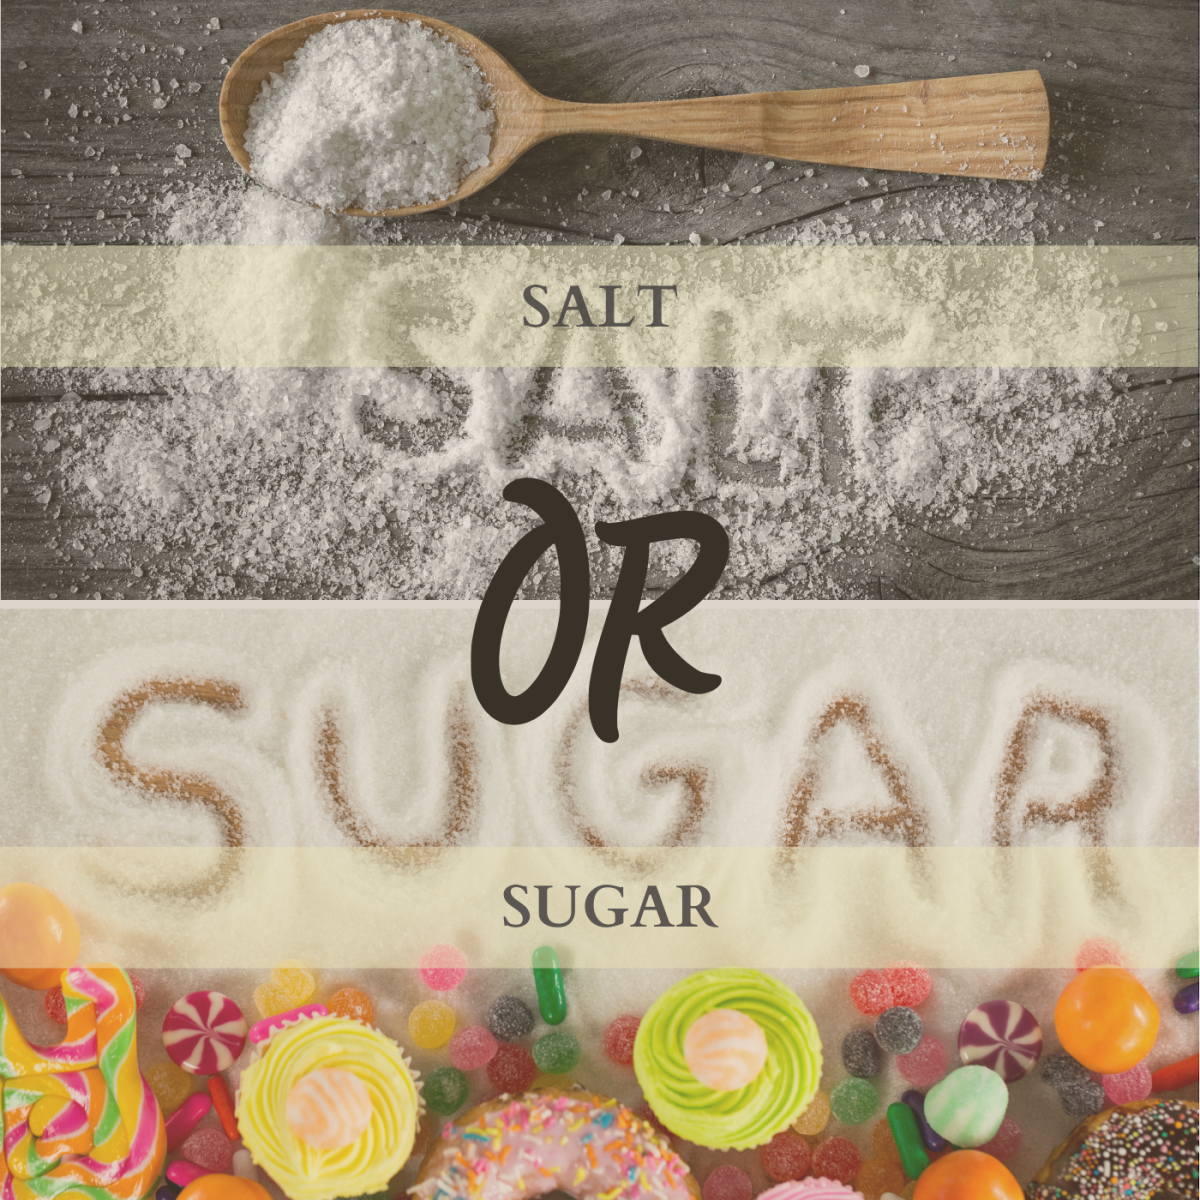 Salt or sugar?